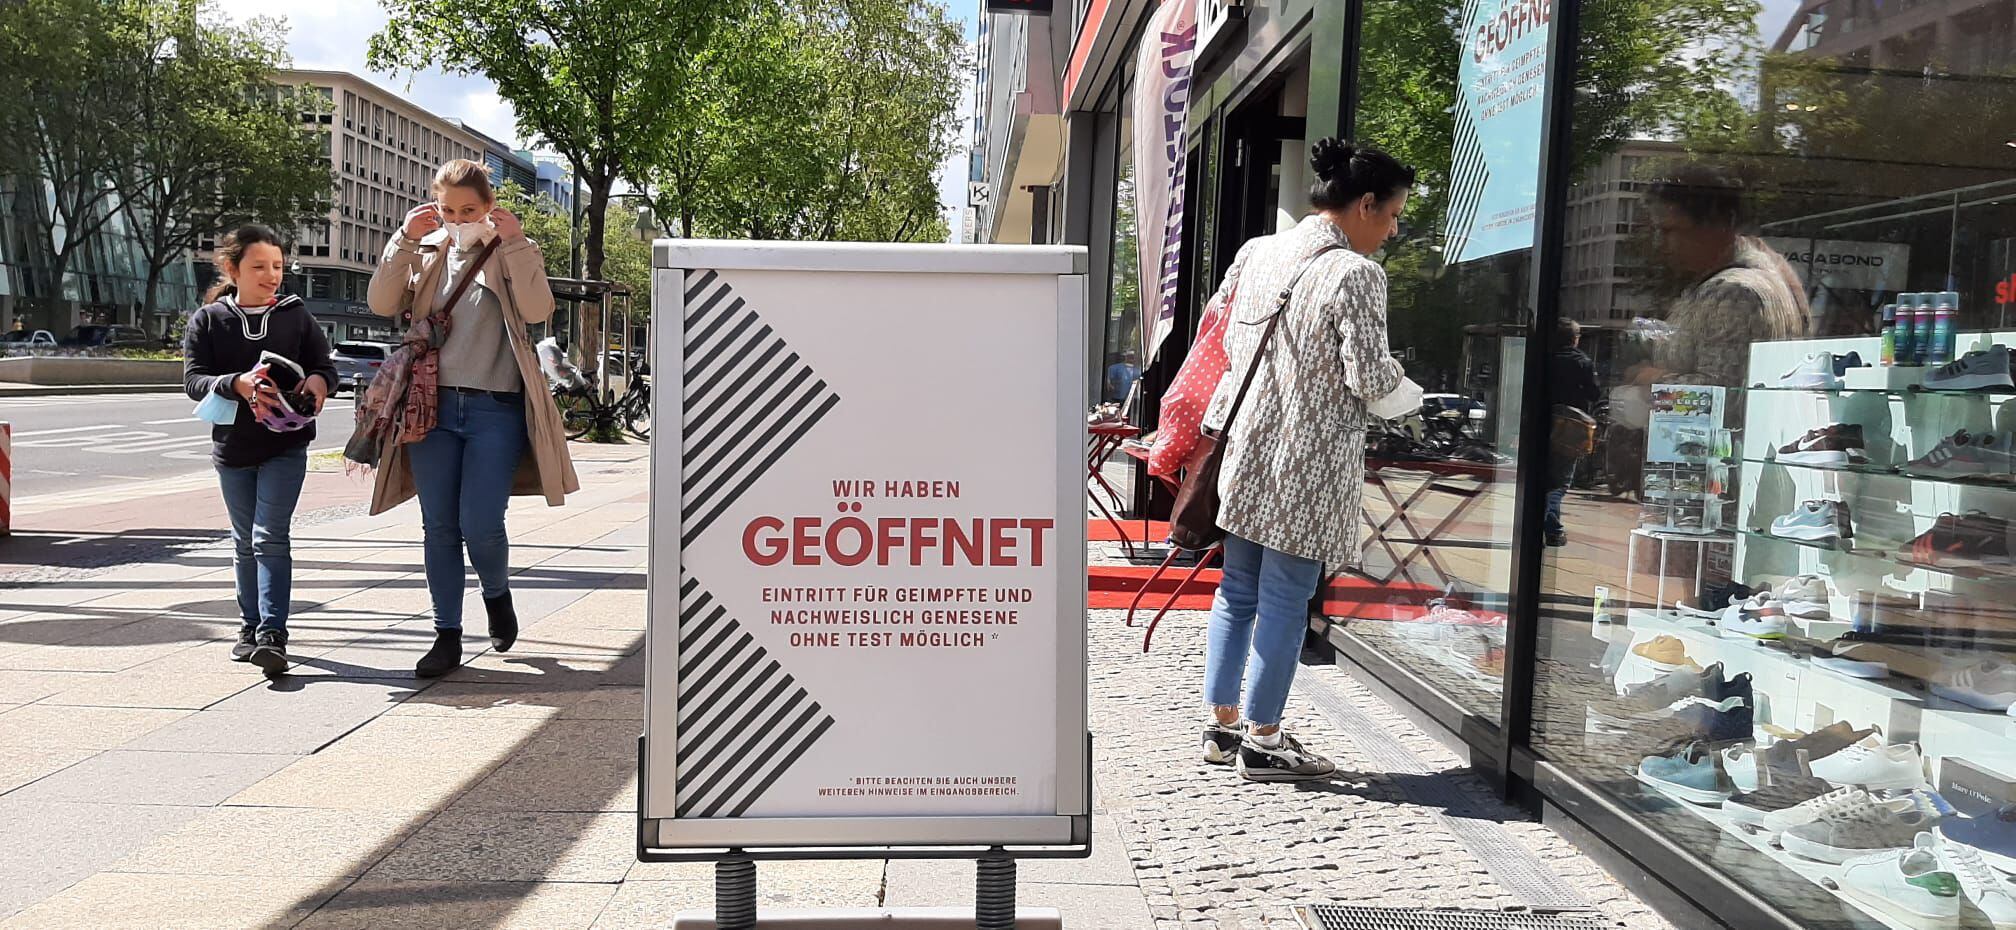 Loja de sapatos numa rua comercial de Berlim exibe cartaz dizendo que pessoas imunizadas podem entrar sem mostrar exame negativo.